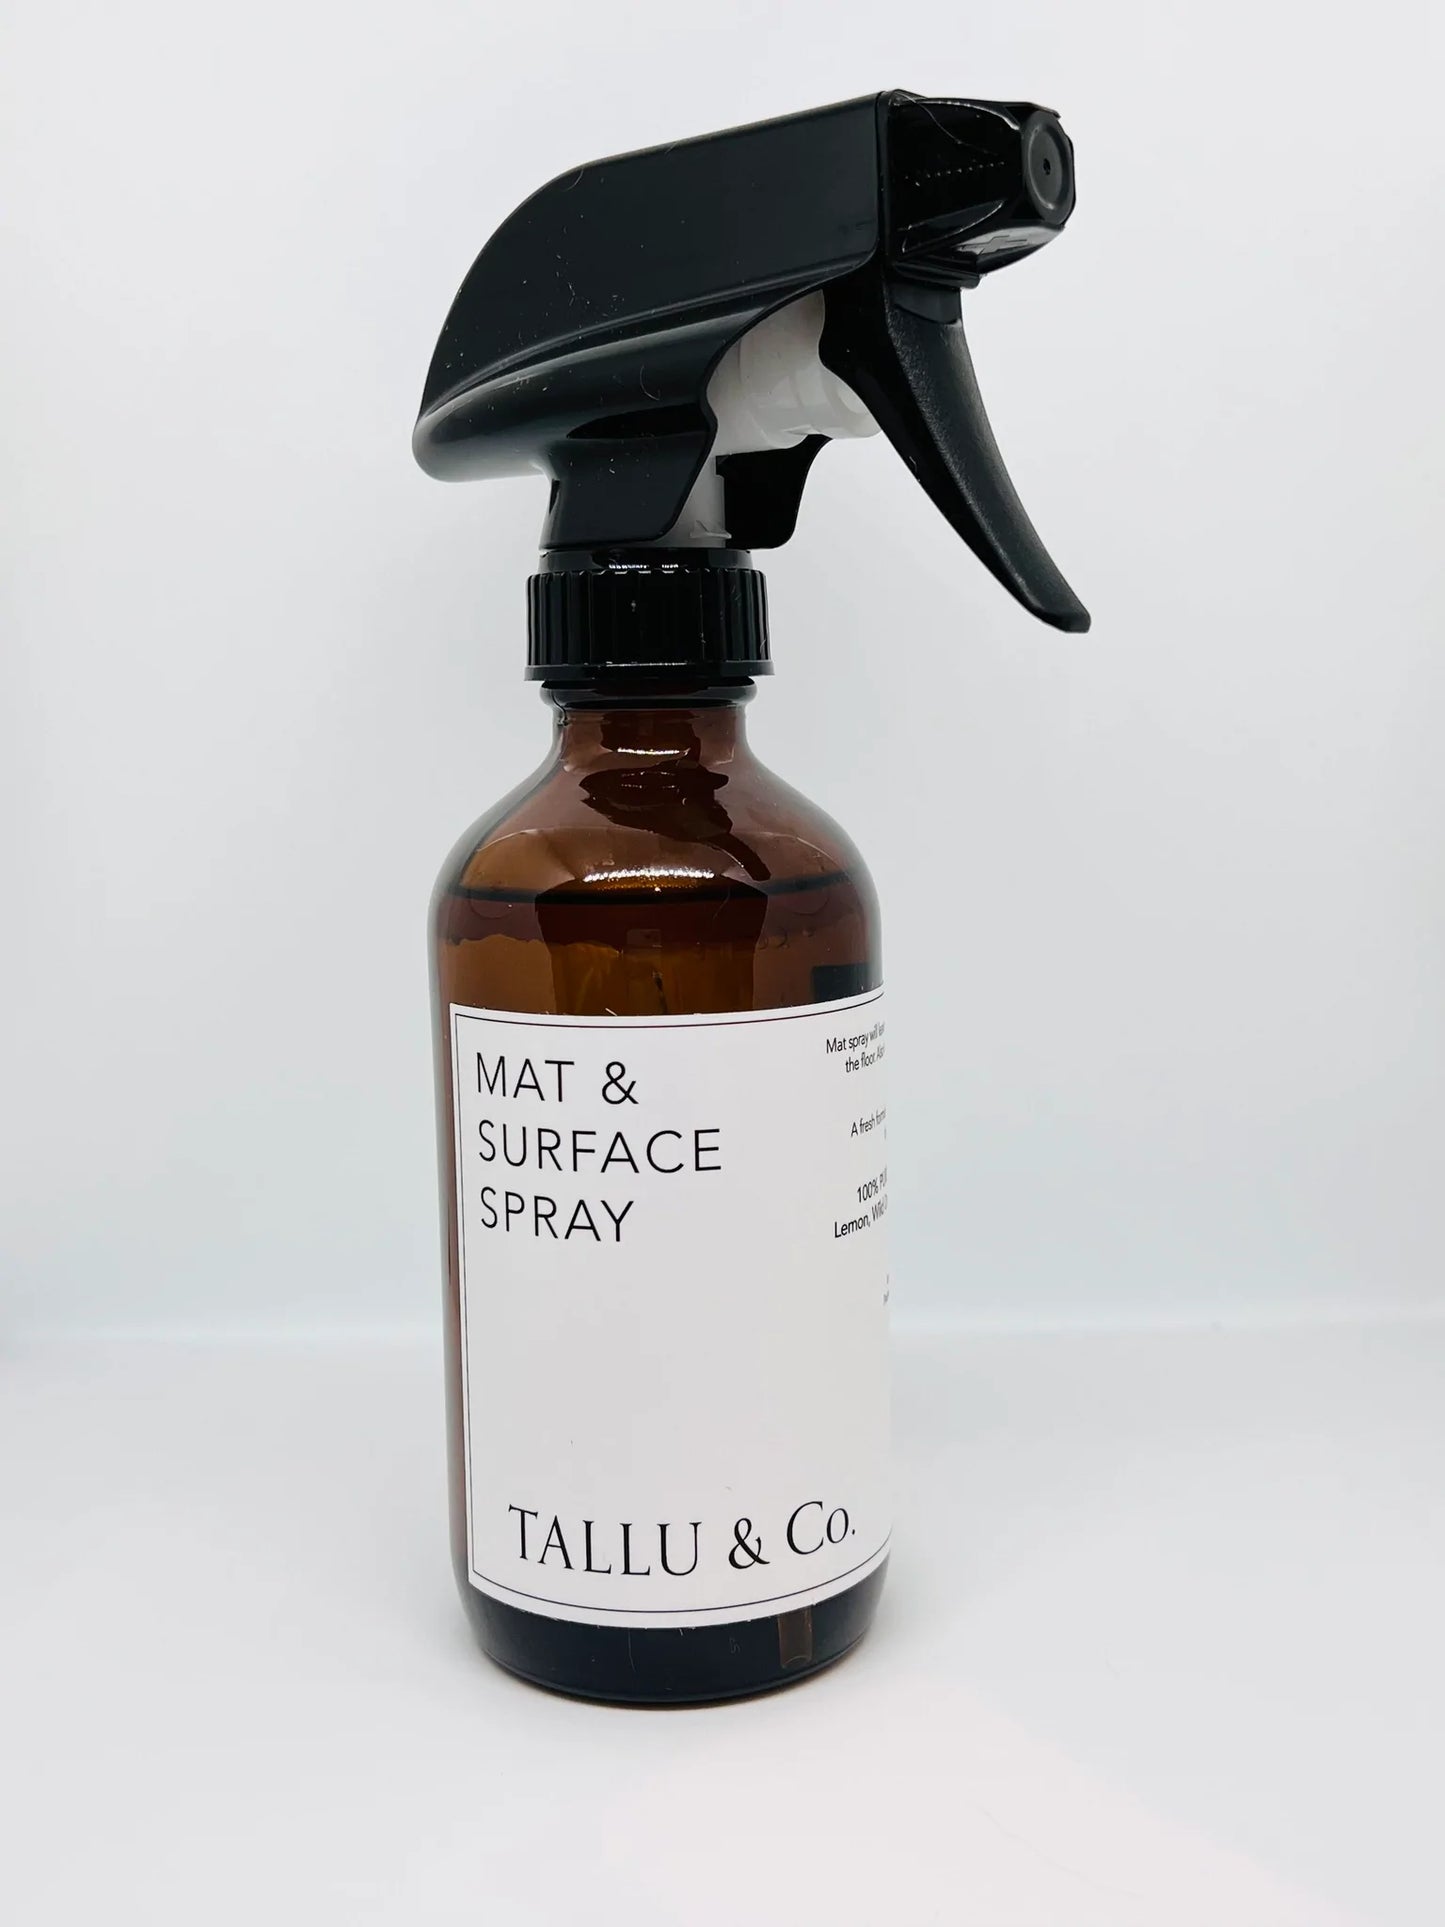 Tallu & Co.-MAT & SURFACE Spray